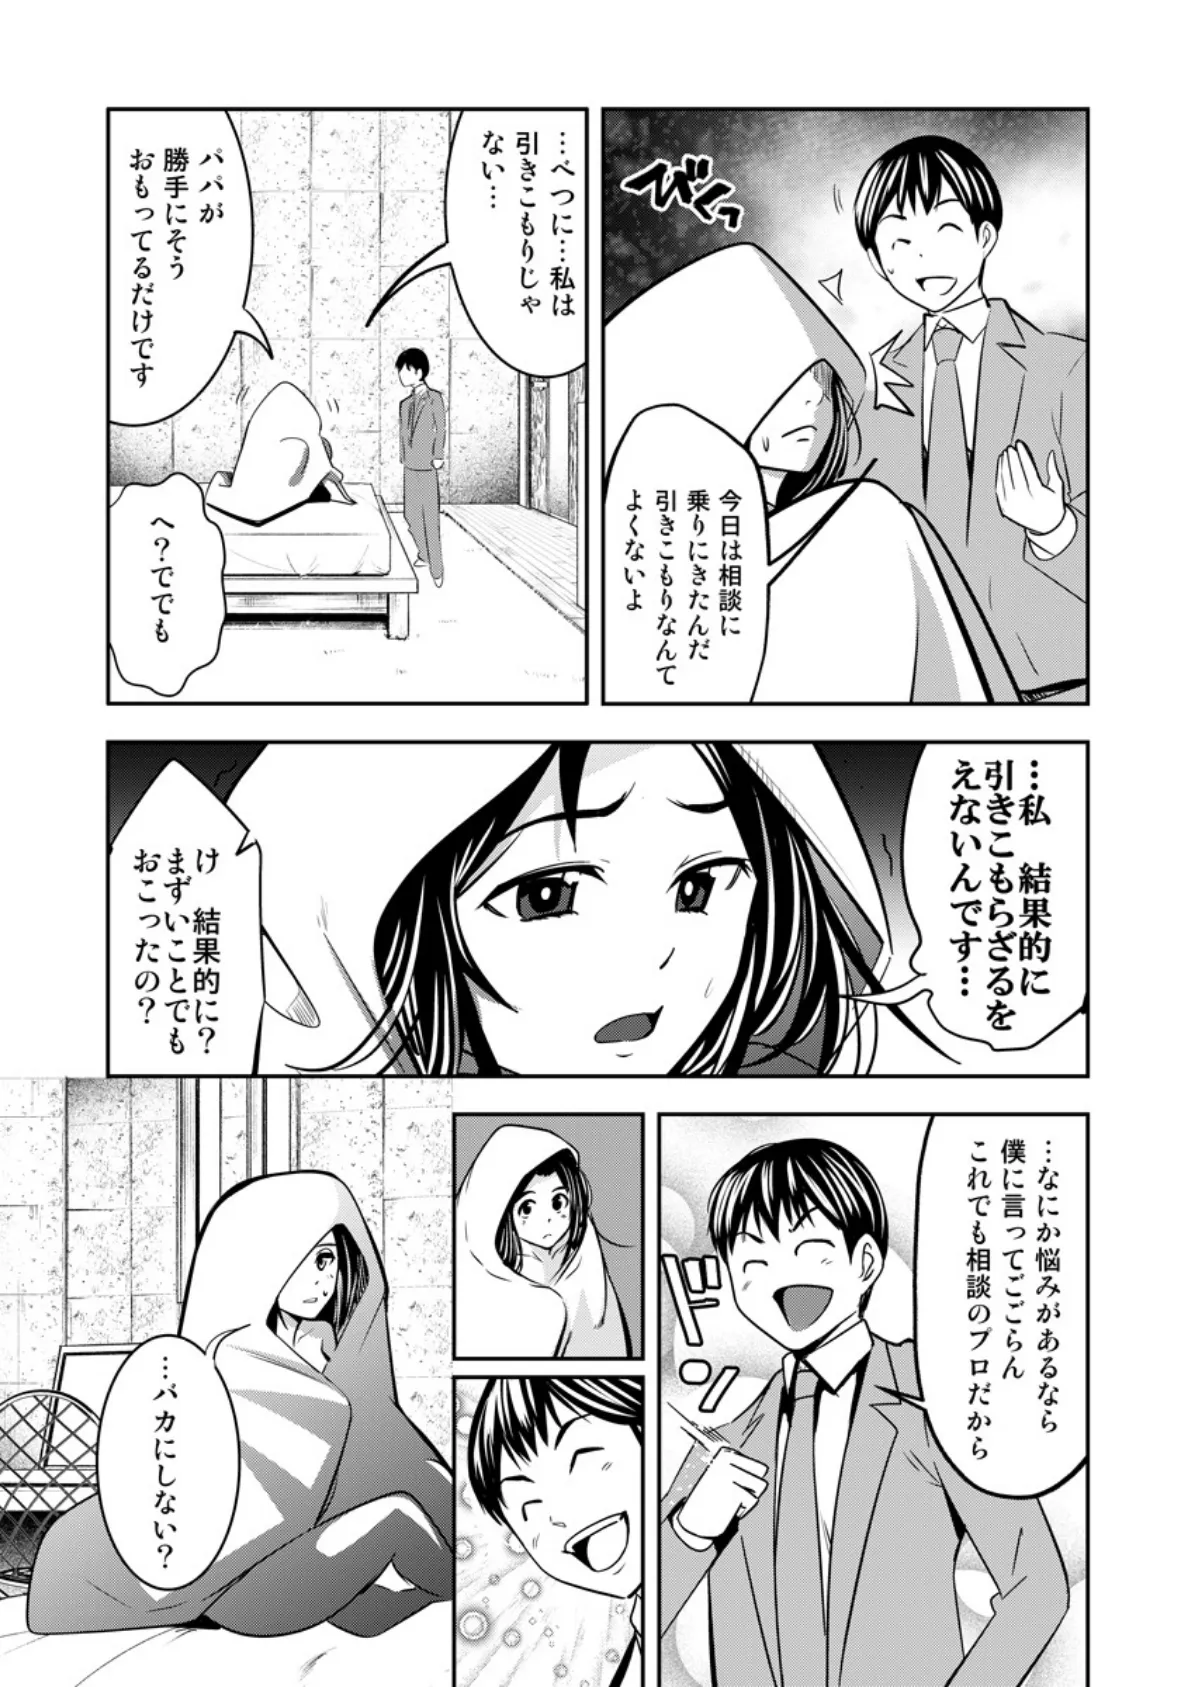 SEXダイヤル1919〜人妻の淫らなお悩み解決します〜 3 6ページ